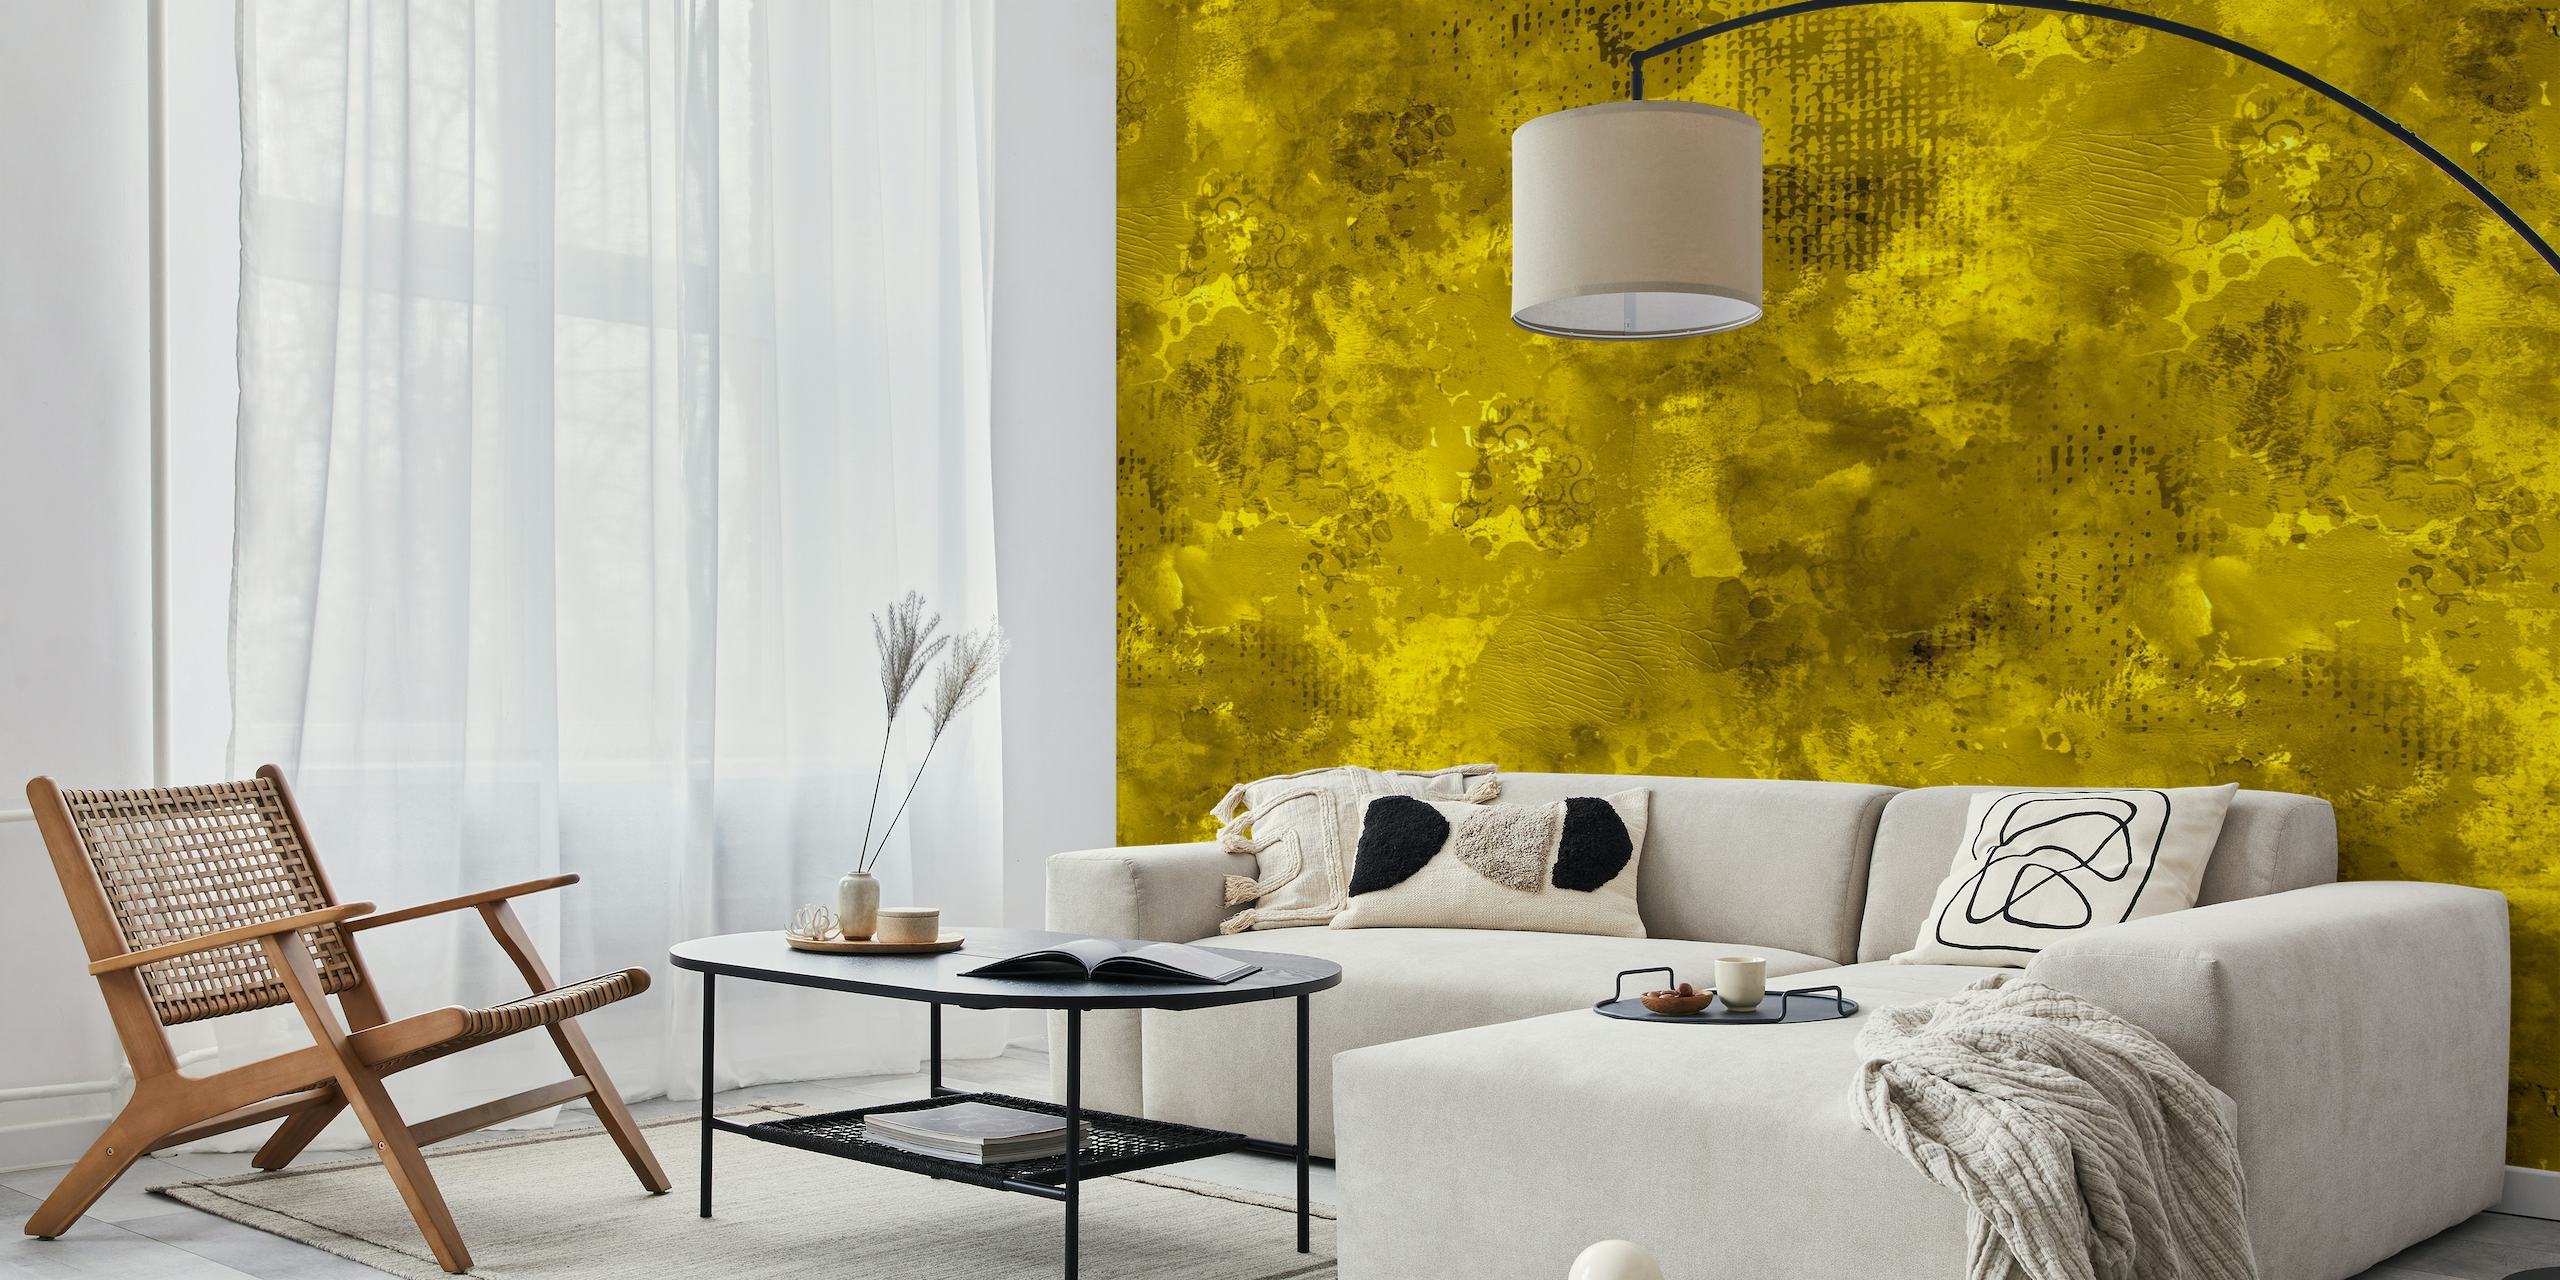 Dynamische en gedurfde moderne abstracte gele verftextuur muurschildering die een levendig visueel statement creëert.